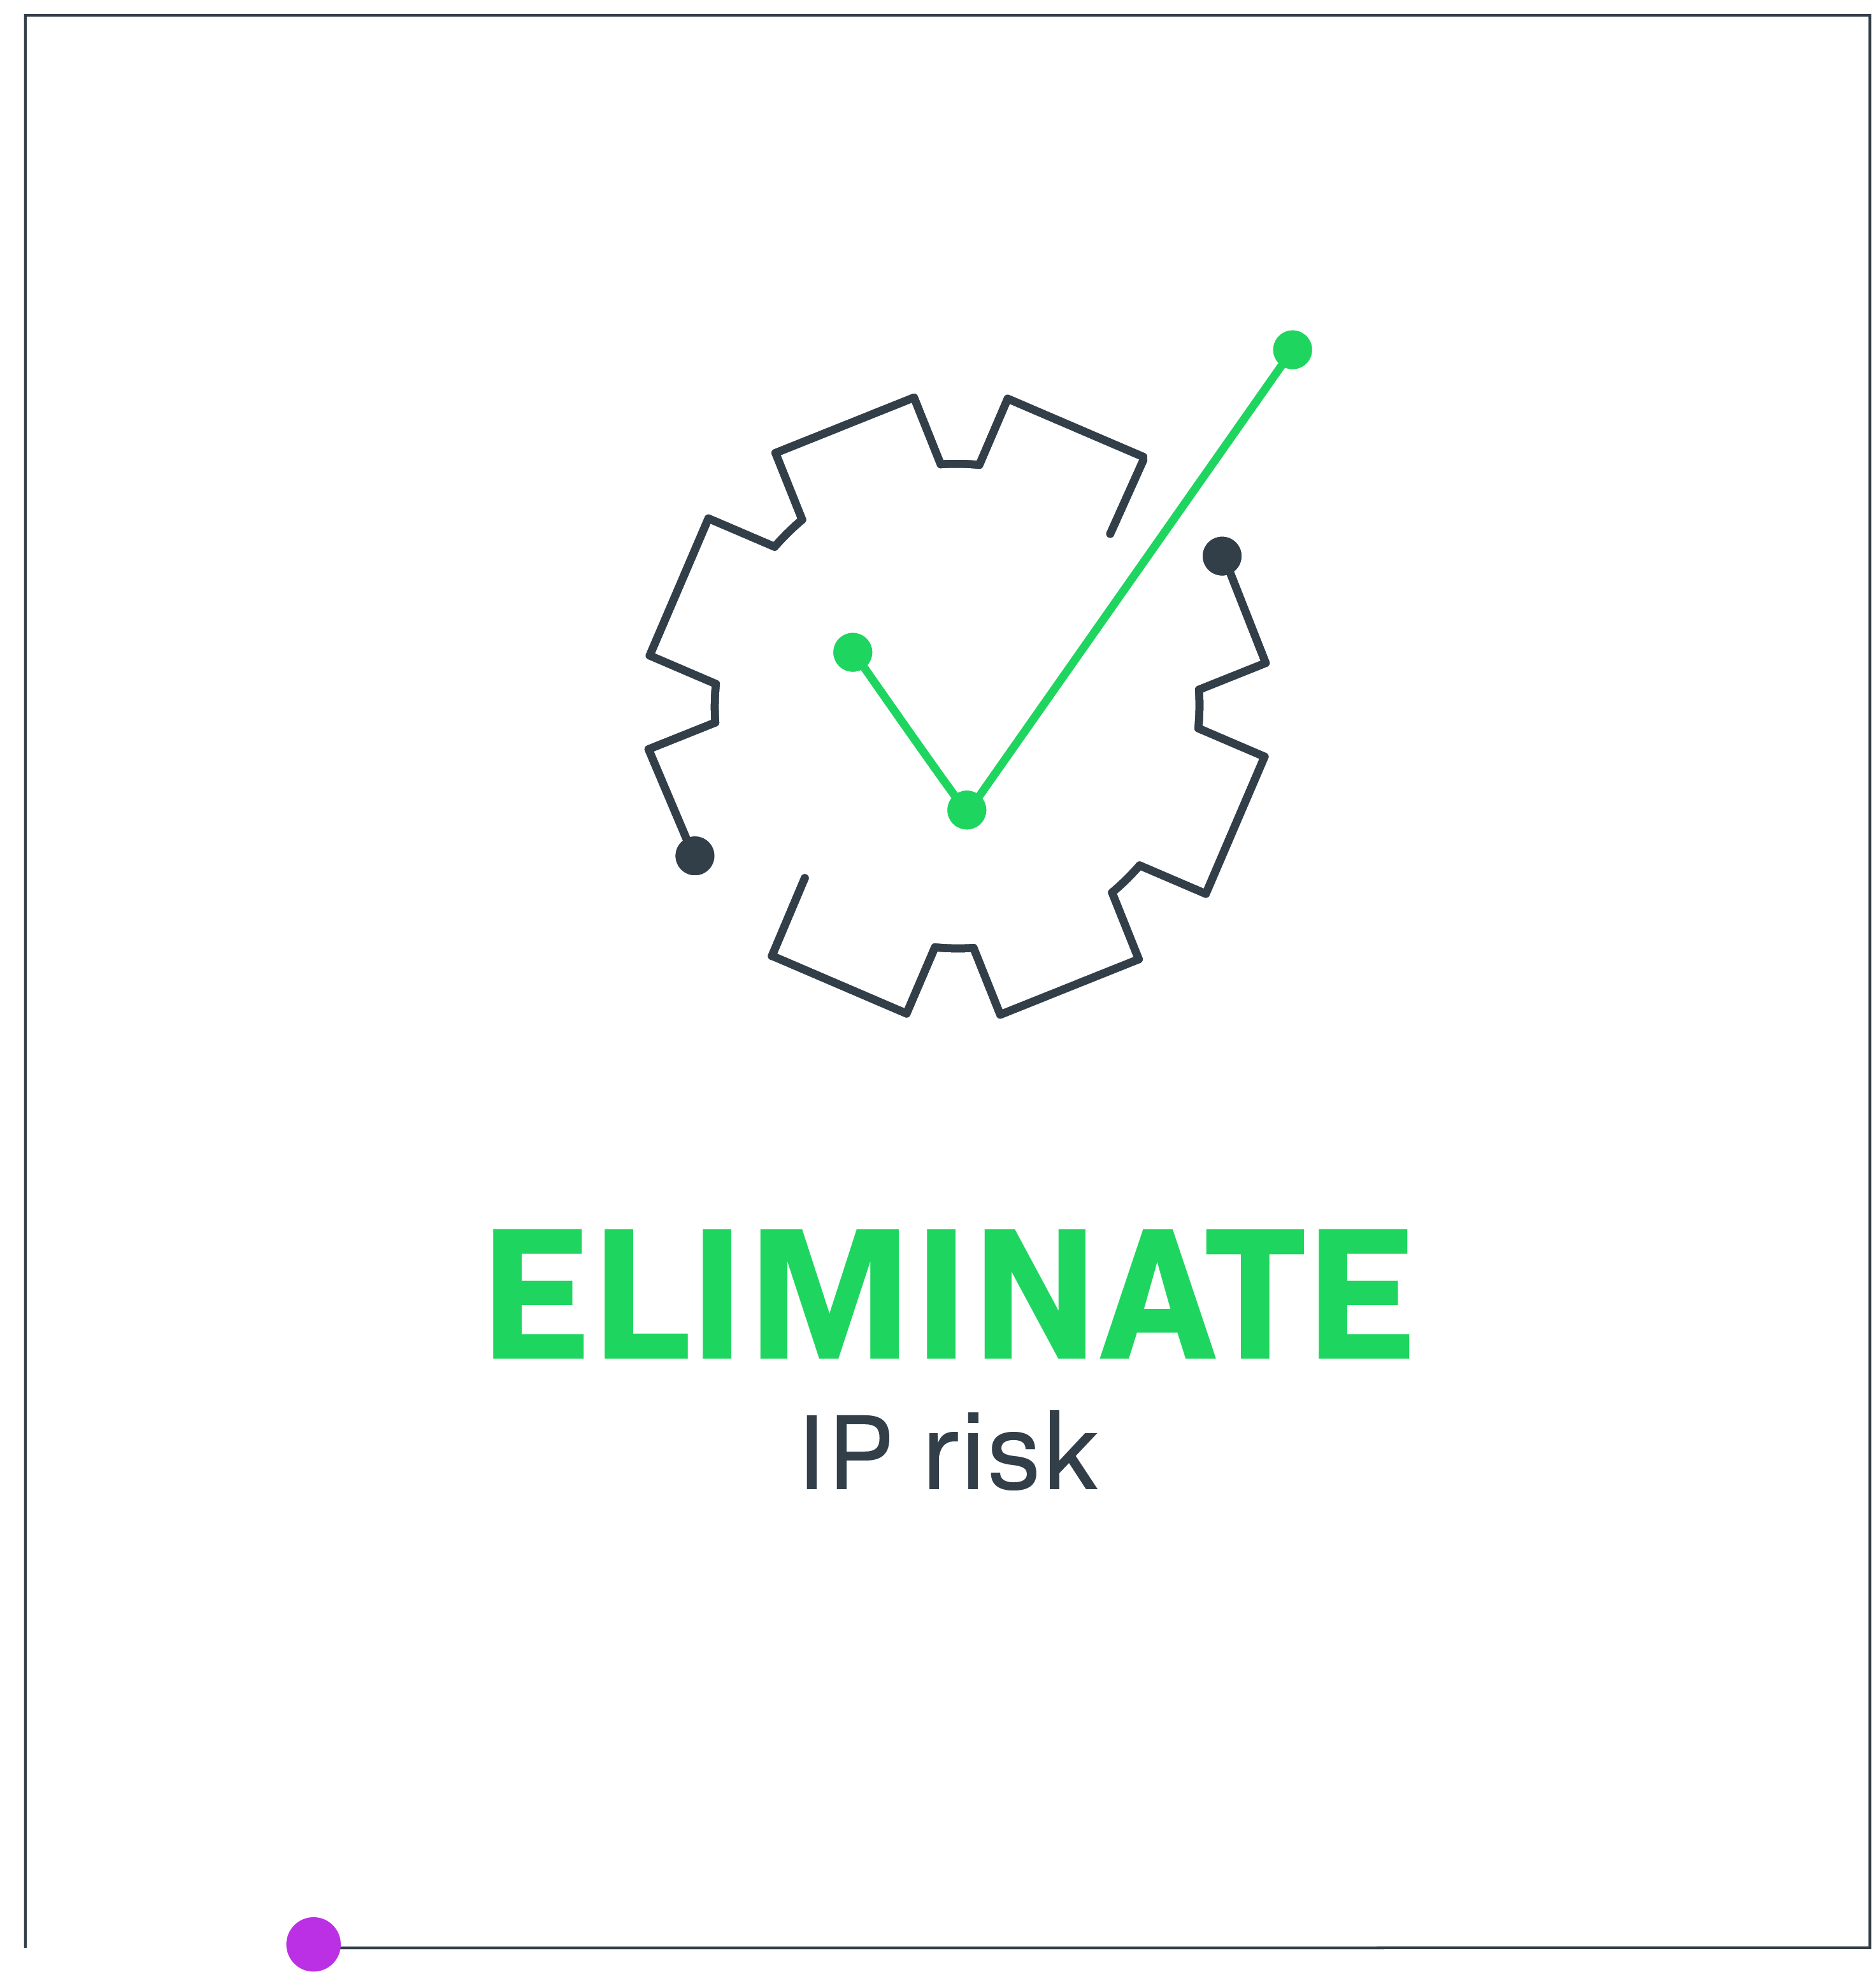 Eliminate IP risk